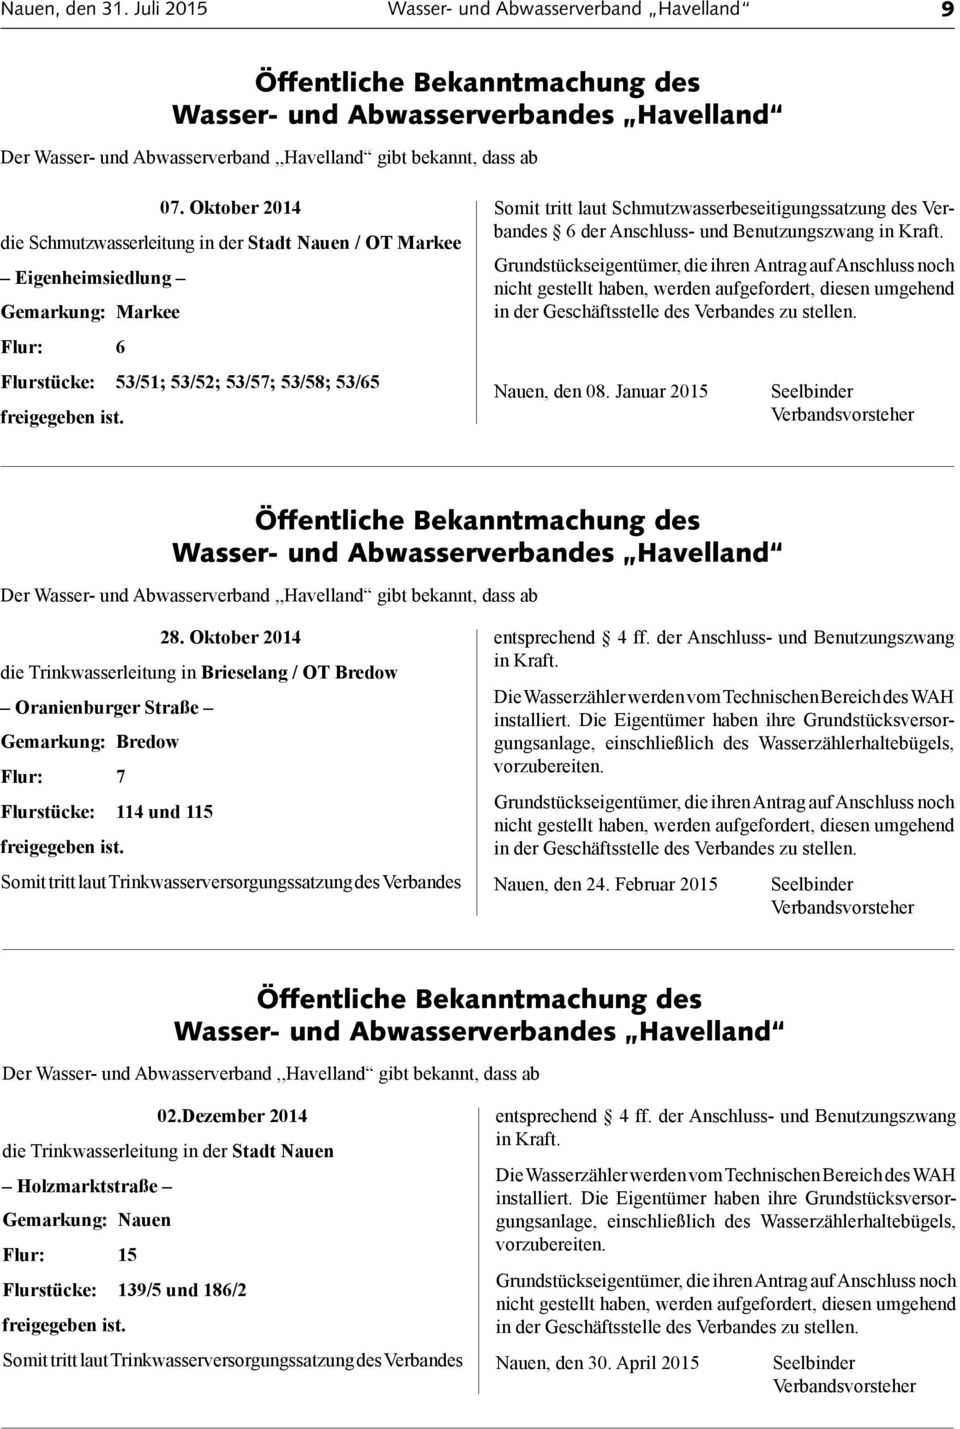 Schmutzwasserbeseitigungssatzung des Verbandes 6 der Anschluss und Benutzungszwang in Kraft. Nauen, den 08. Januar 2015 28.